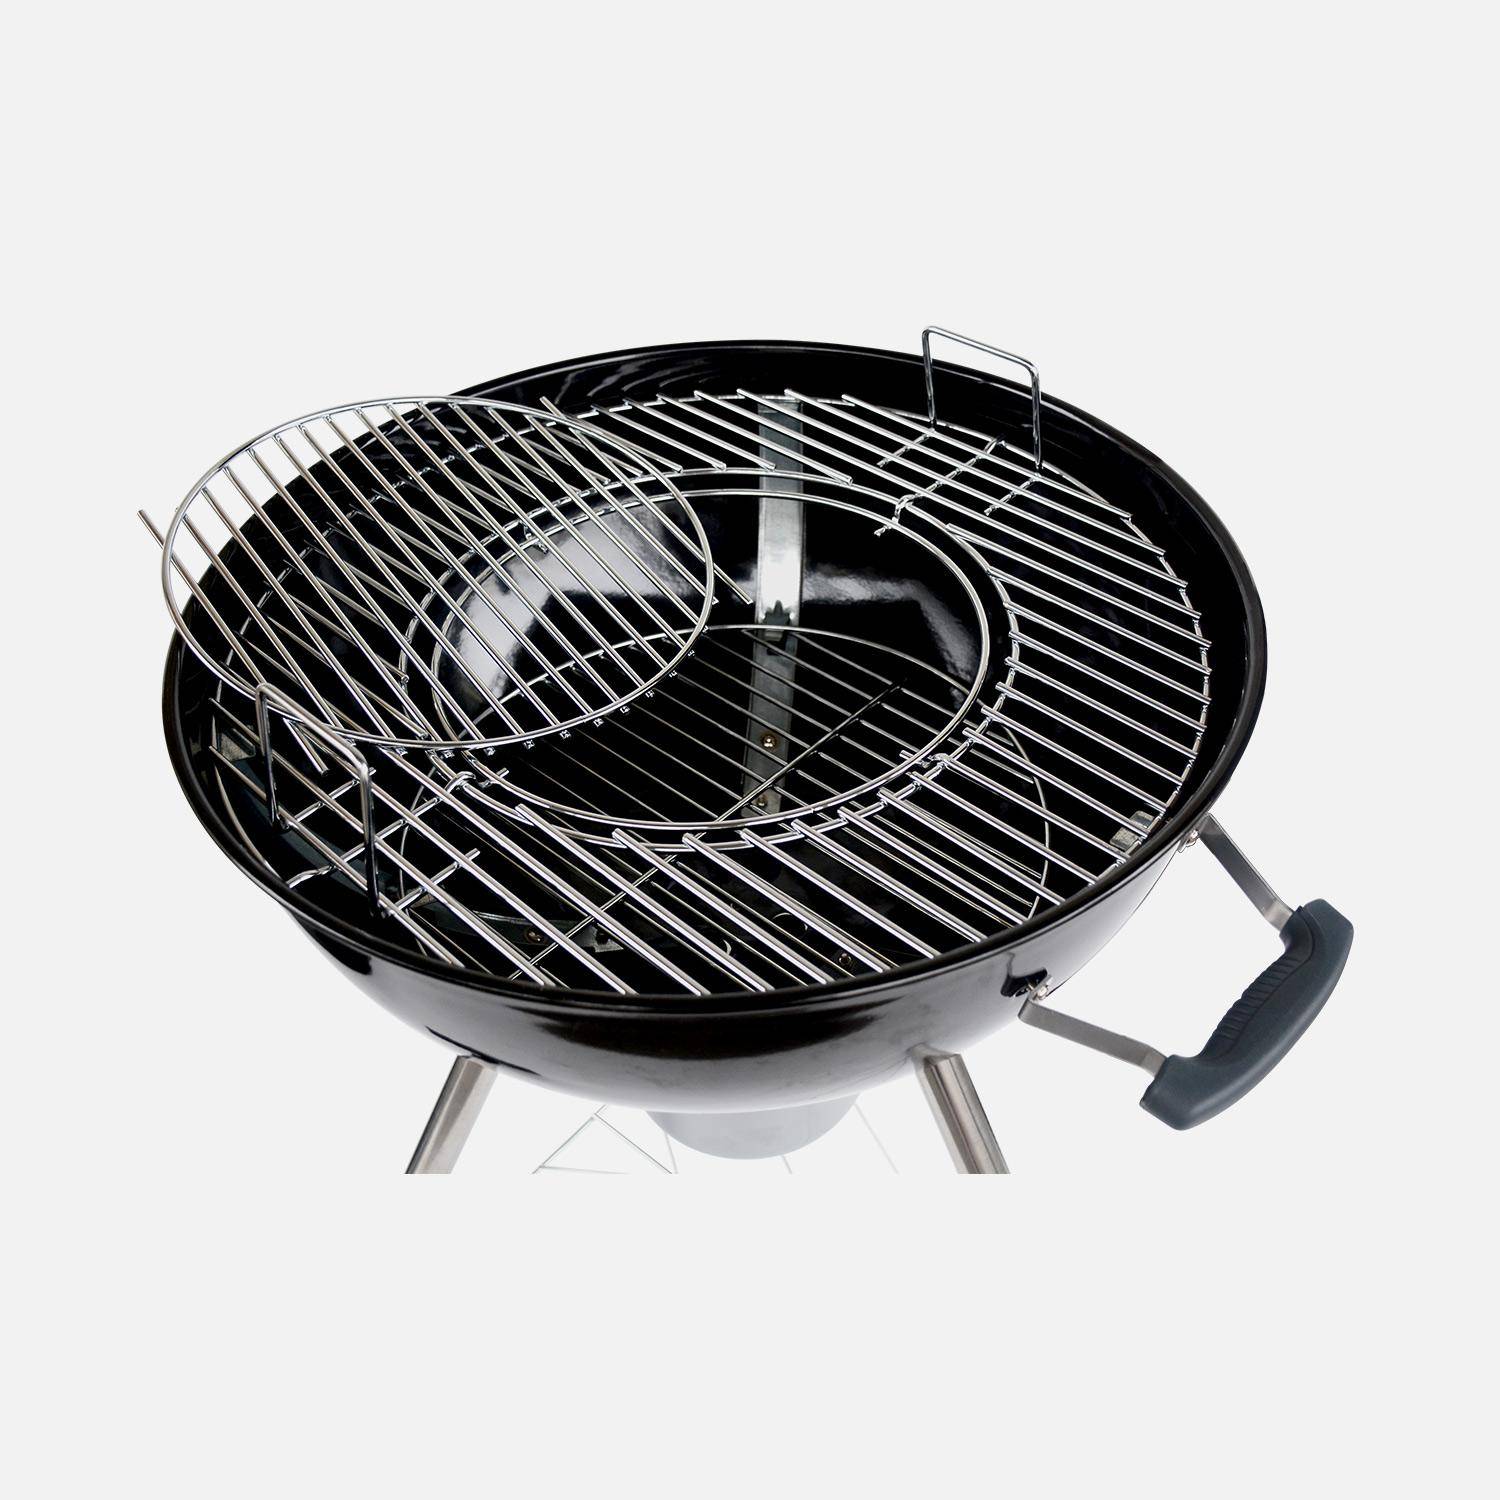 Barbecue PREMIUM charbon de bois Ø57cm - Charles - Noir émaillé, barbecue avec grille amovible, aérateurs, fumoir, récupérateur de cendres Photo5